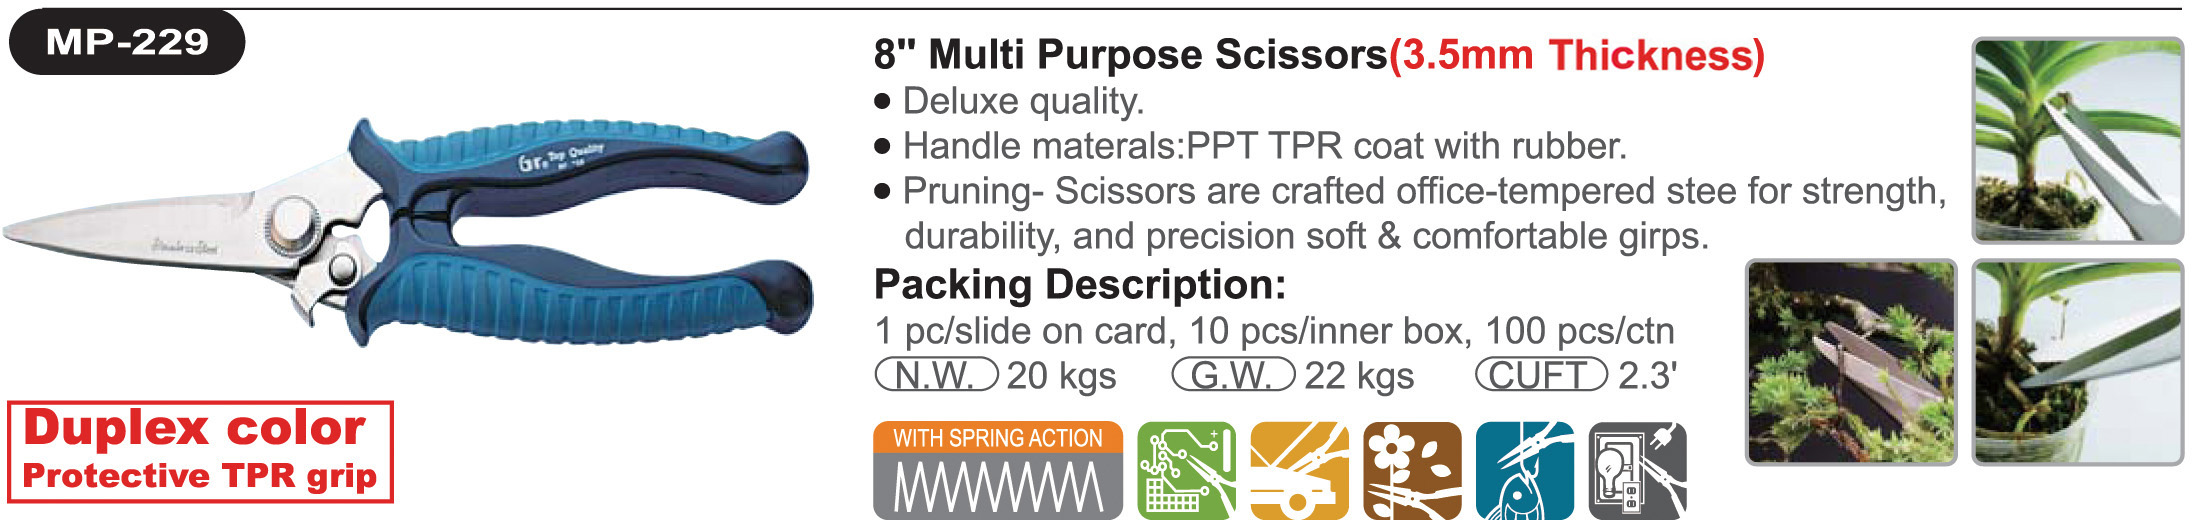 proimages/product/scissors/Multi_Purpose_Scissors/MP-229/MP-229.jpg